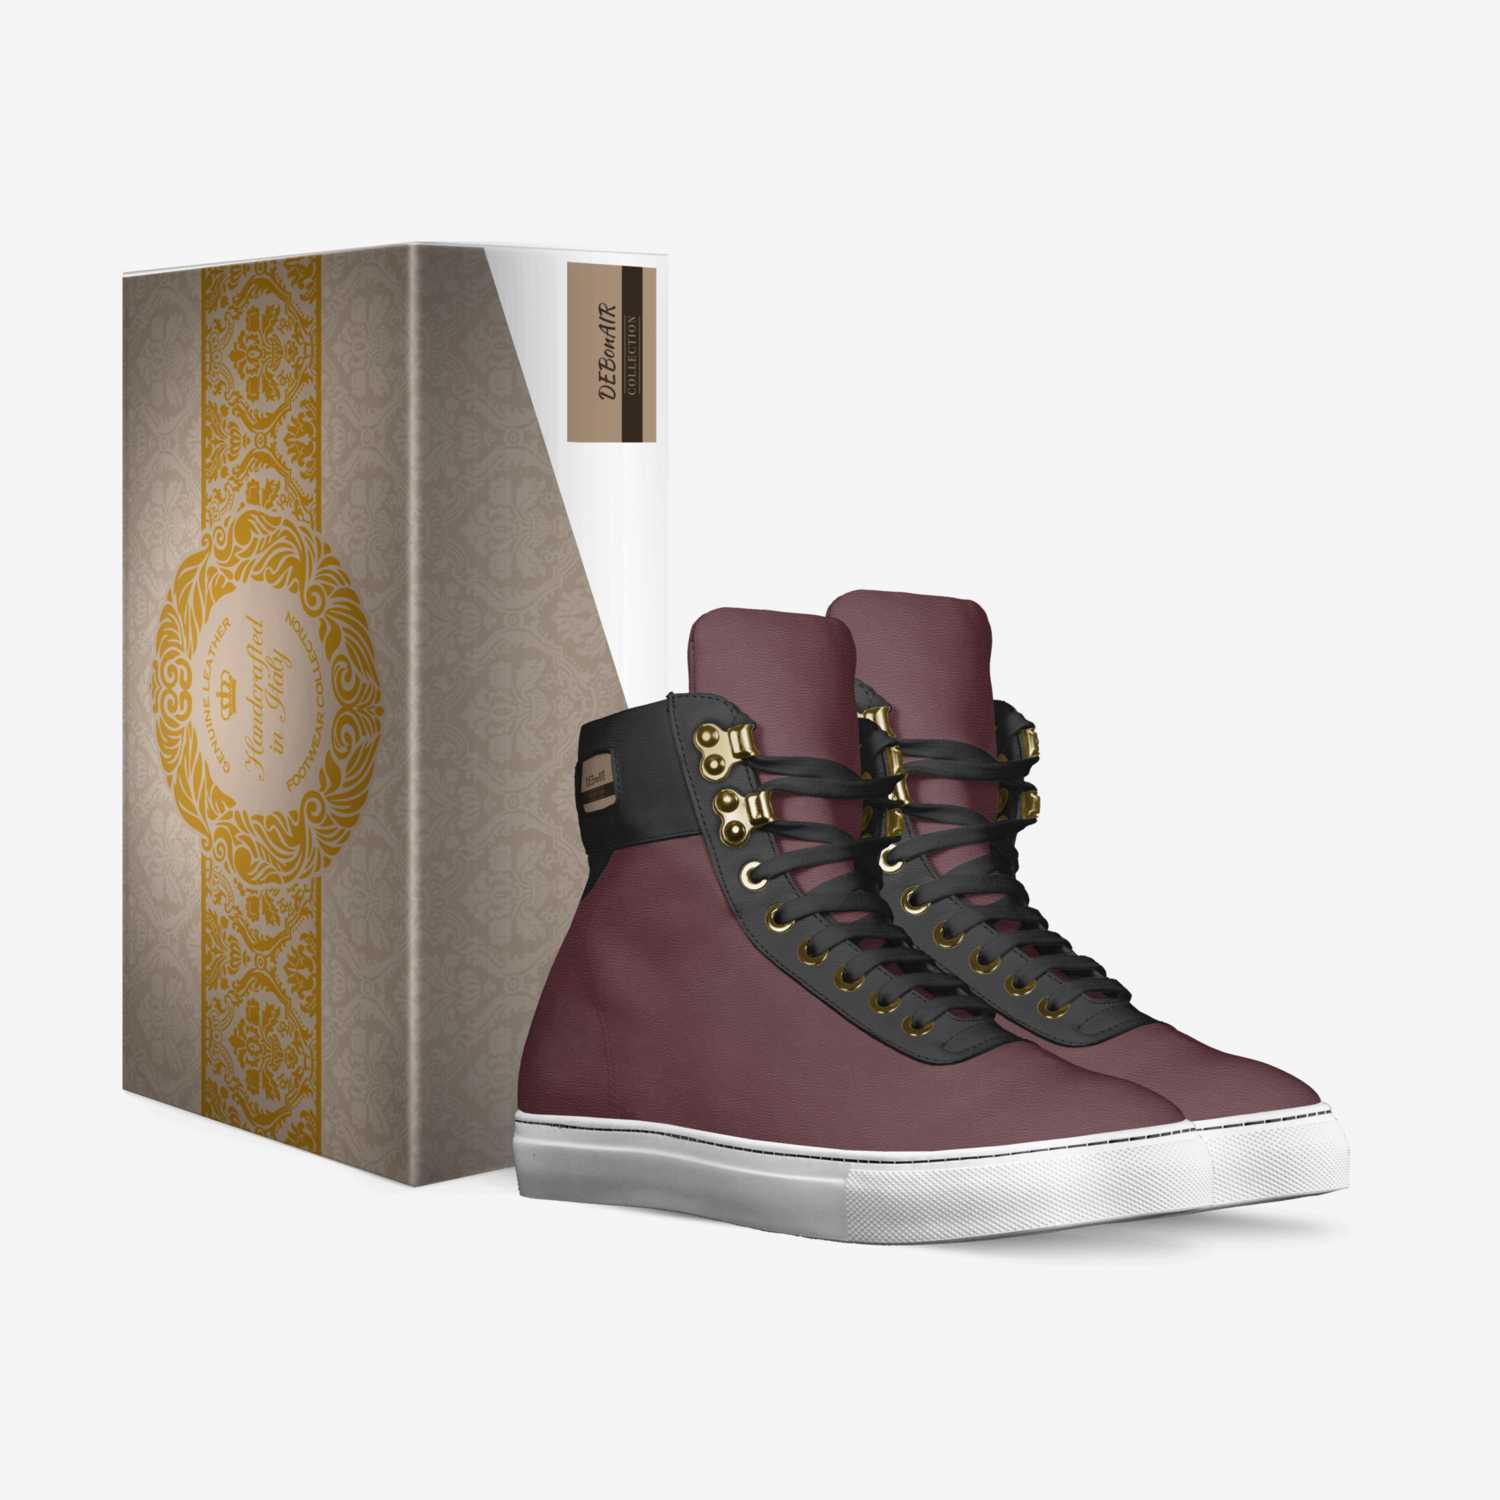 DEBonAIR custom made in Italy shoes by Priya Kolhe | Box view